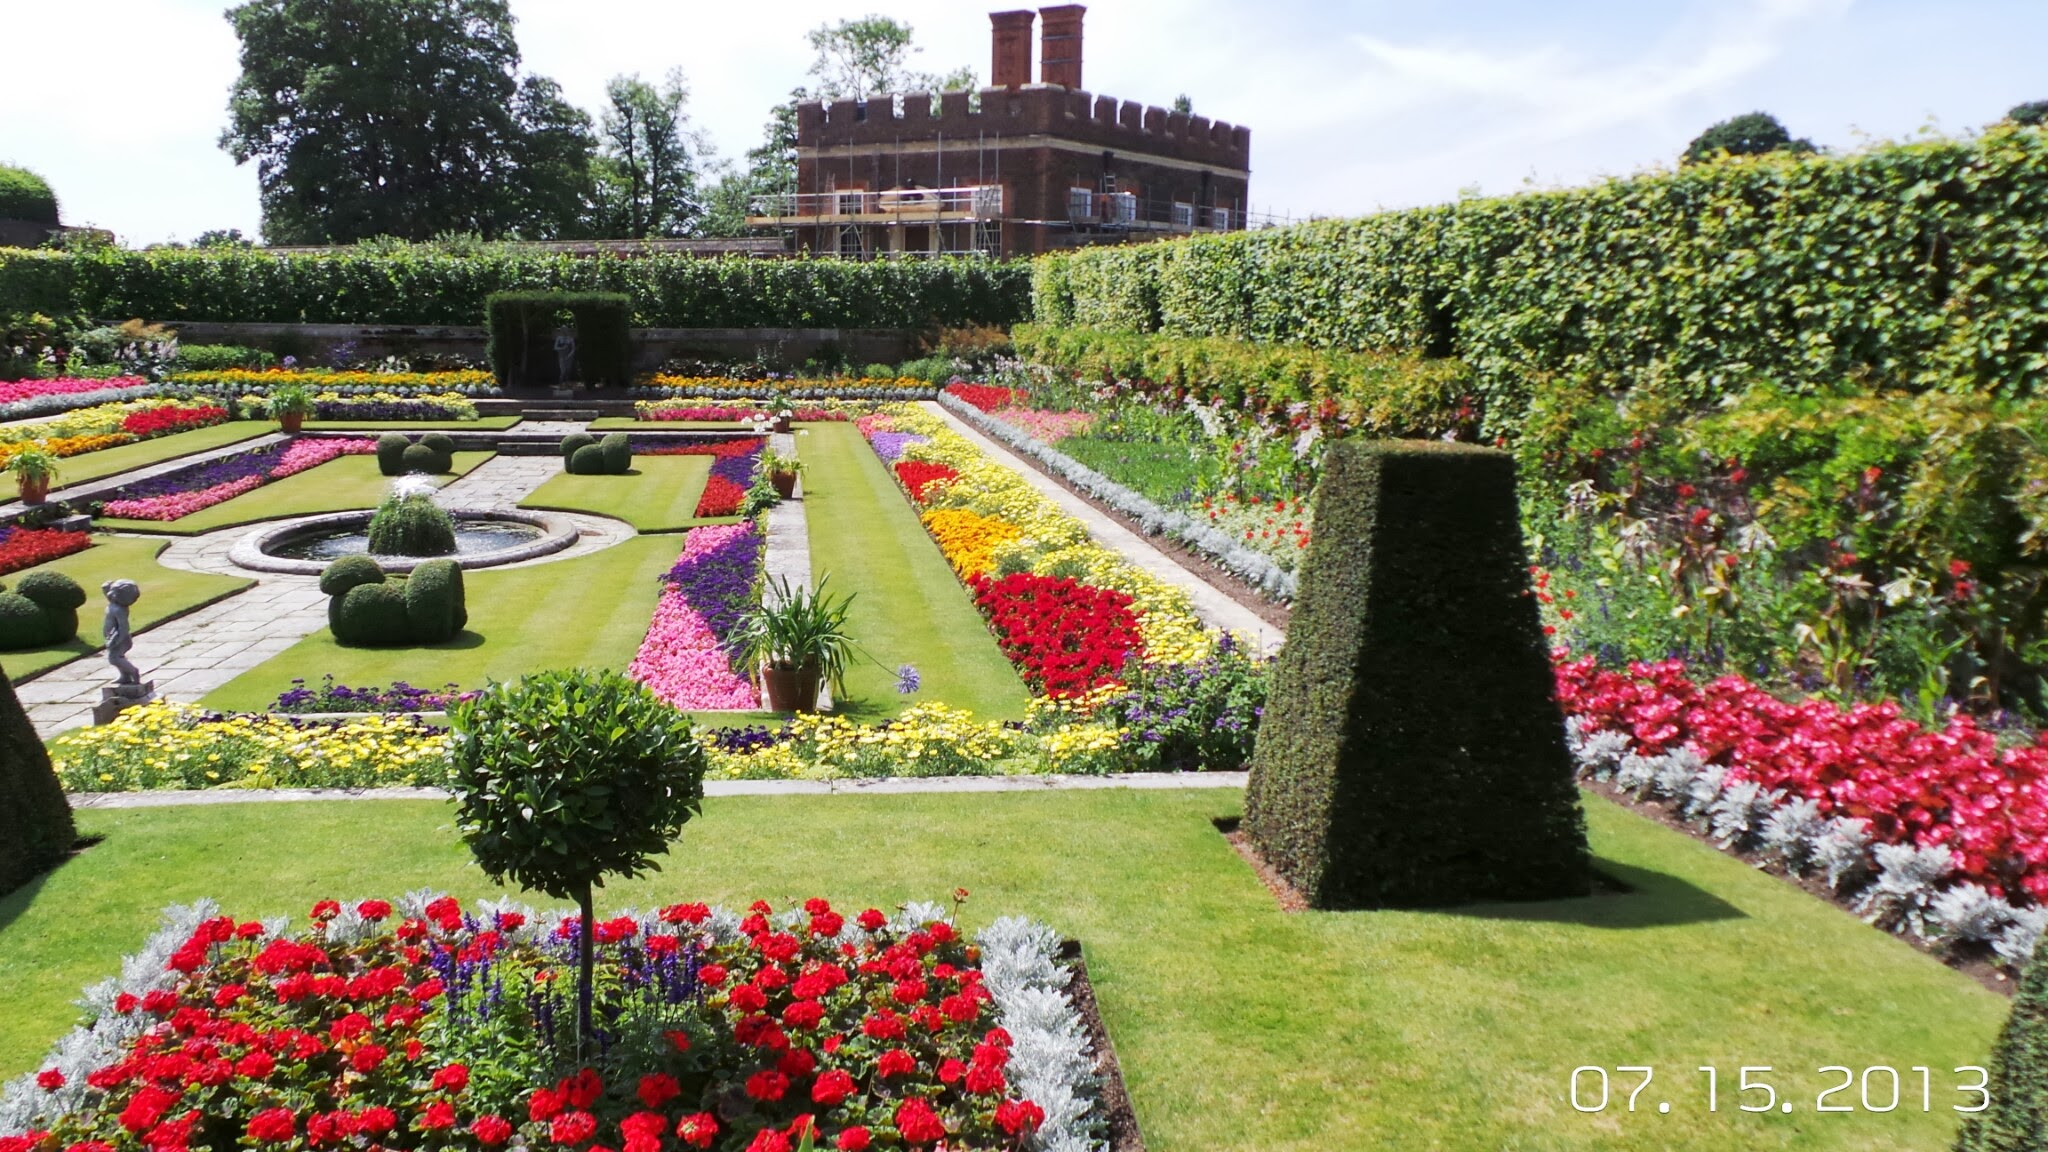 More Gardens at Hampton Court Palace